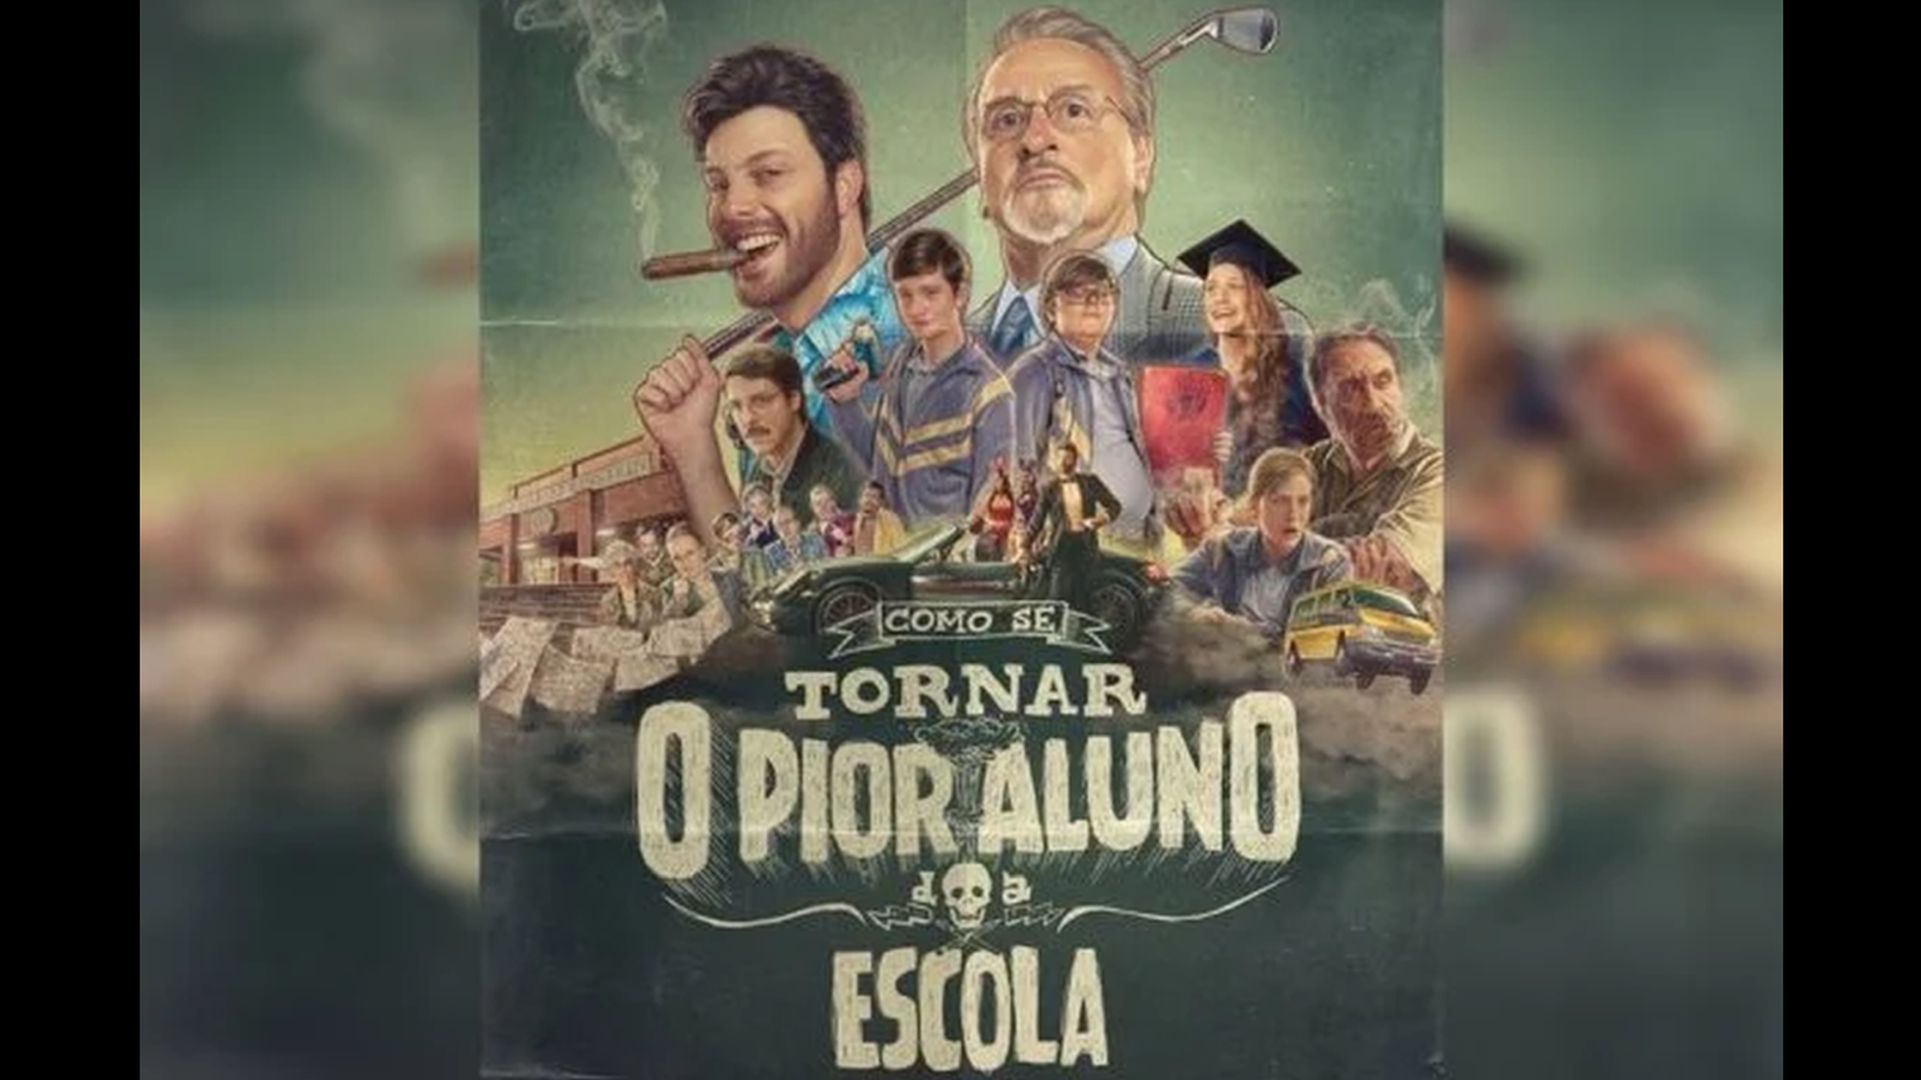 Cartaz de divulgação do filme de Danilo Gentili: "Como se tornar o pior aluno da escola".